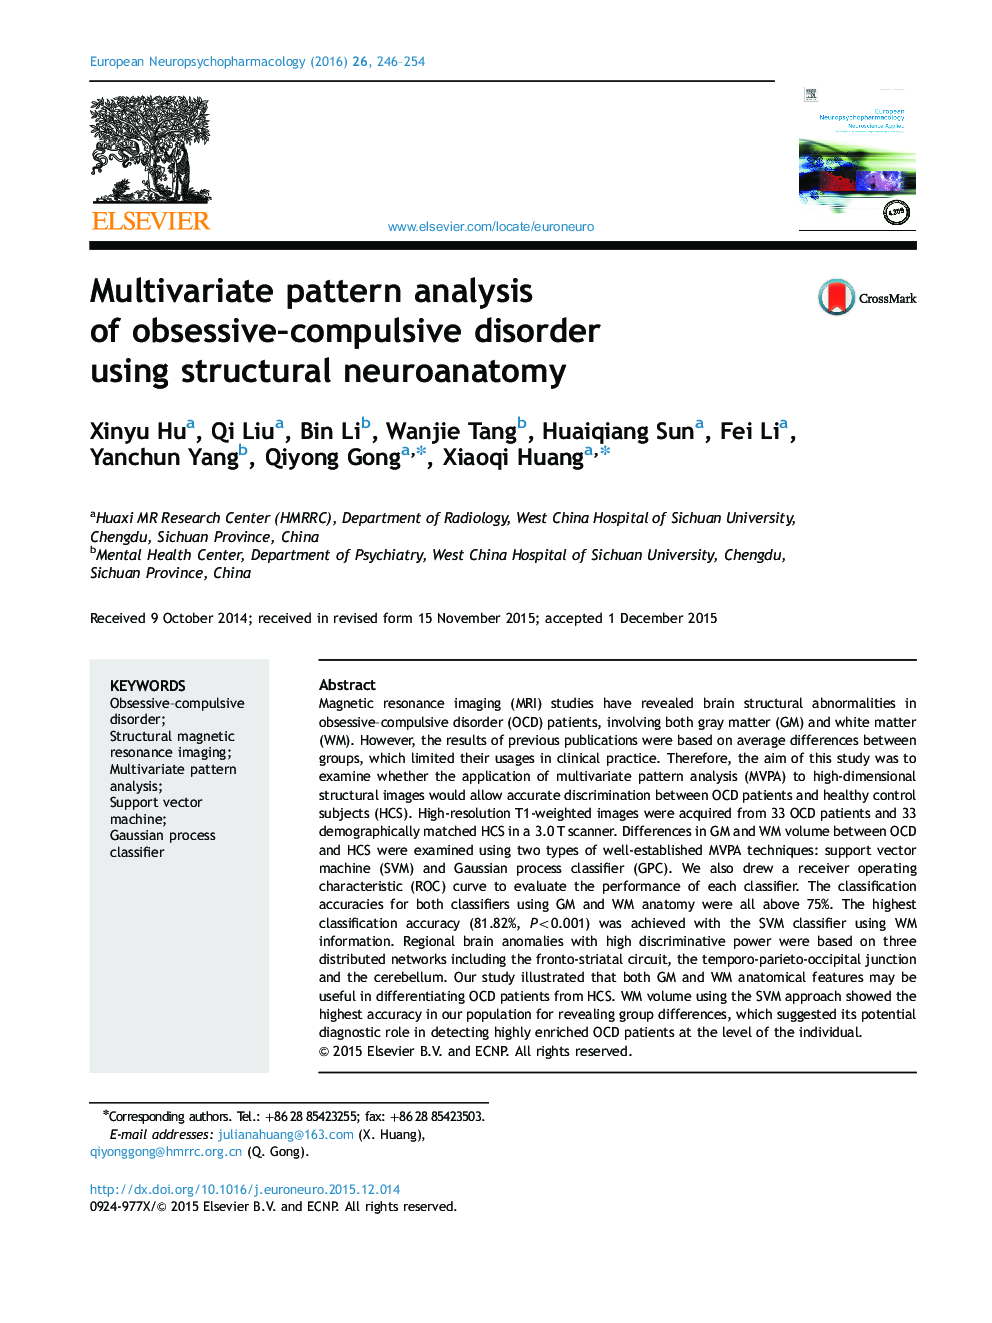 تجزیه و تحلیل الگوی چندمتغیره اختلال وسواس اجباری با استفاده از کالبدشناسی اعصاب ساختاری